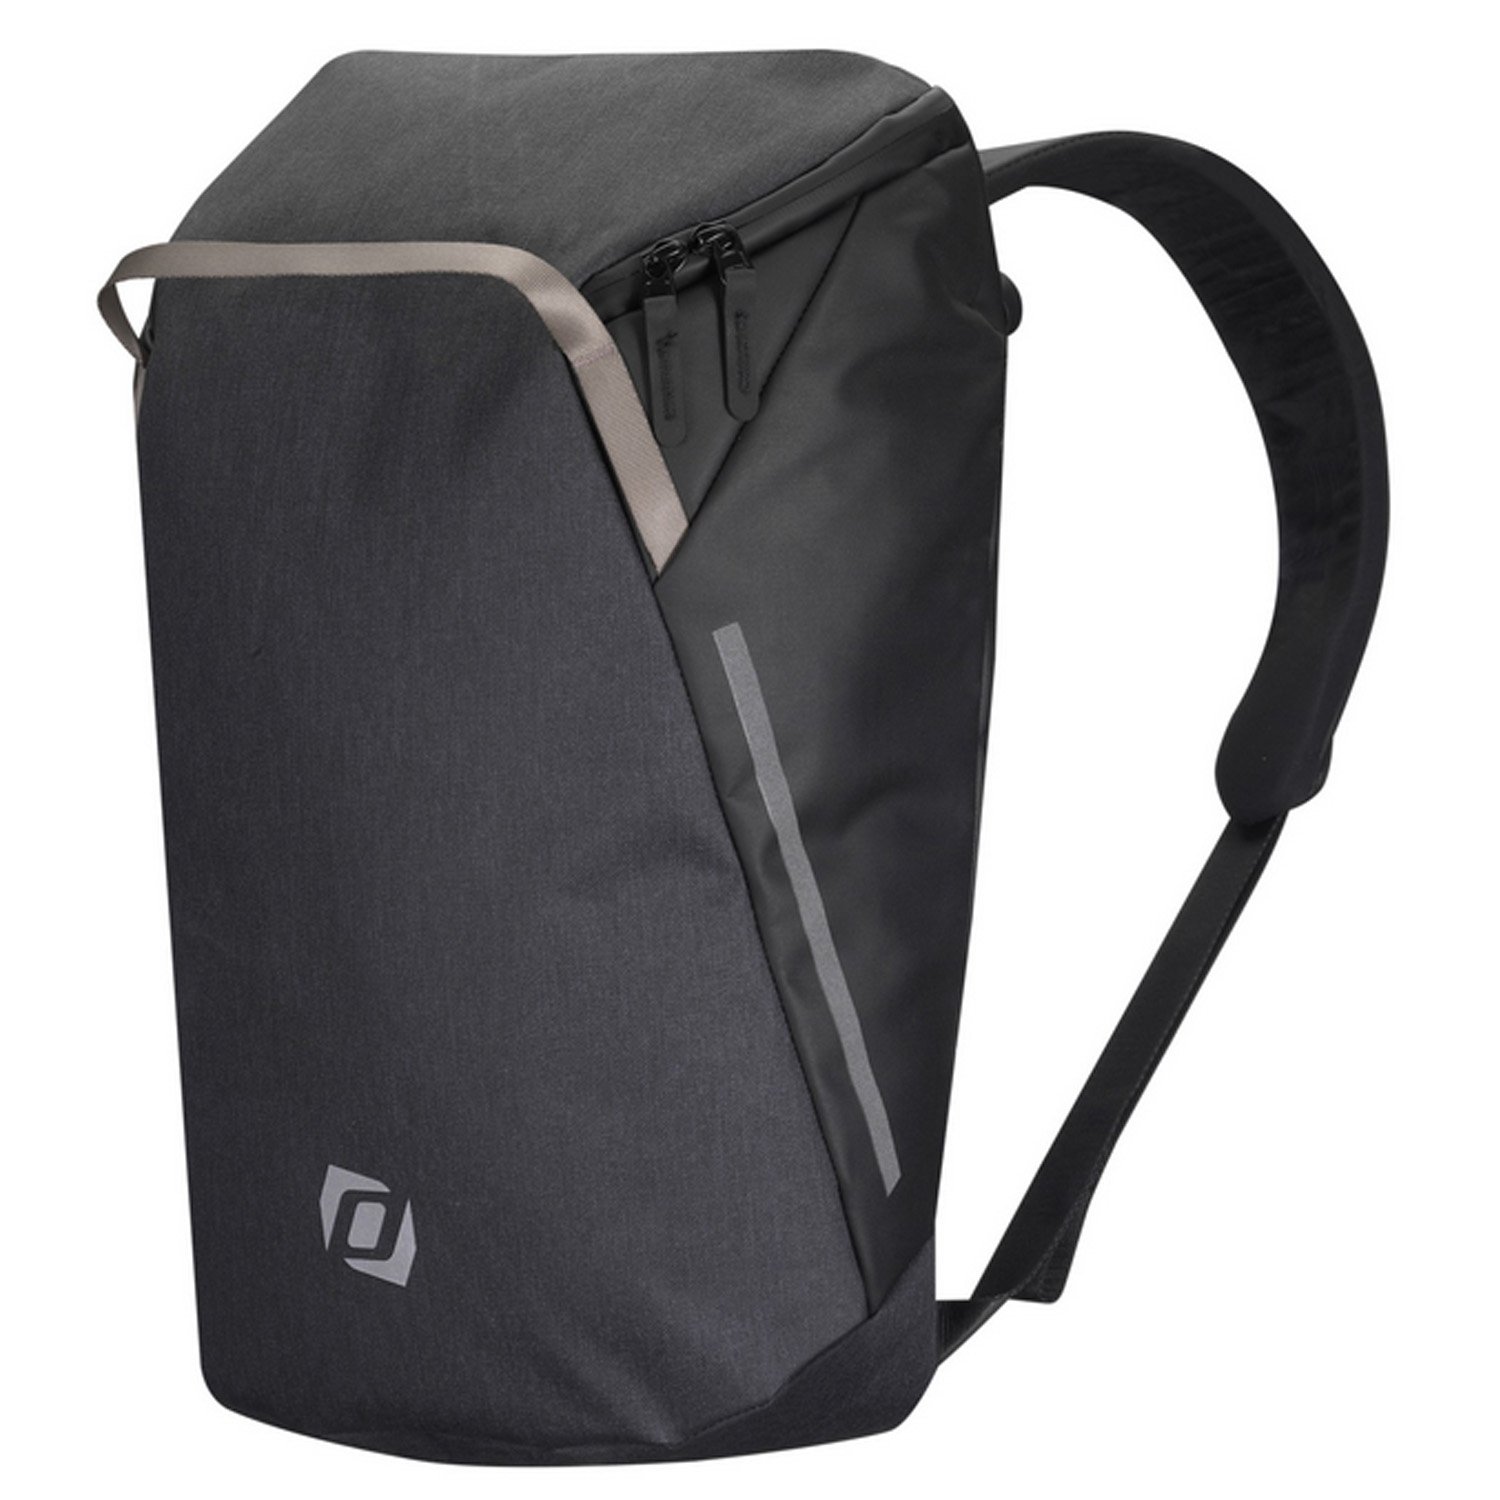 Велосумка Syncros Backpack, для багажника, черный, ES281116-0001 велосумка syncros messenger bag для багажника es281117 0001